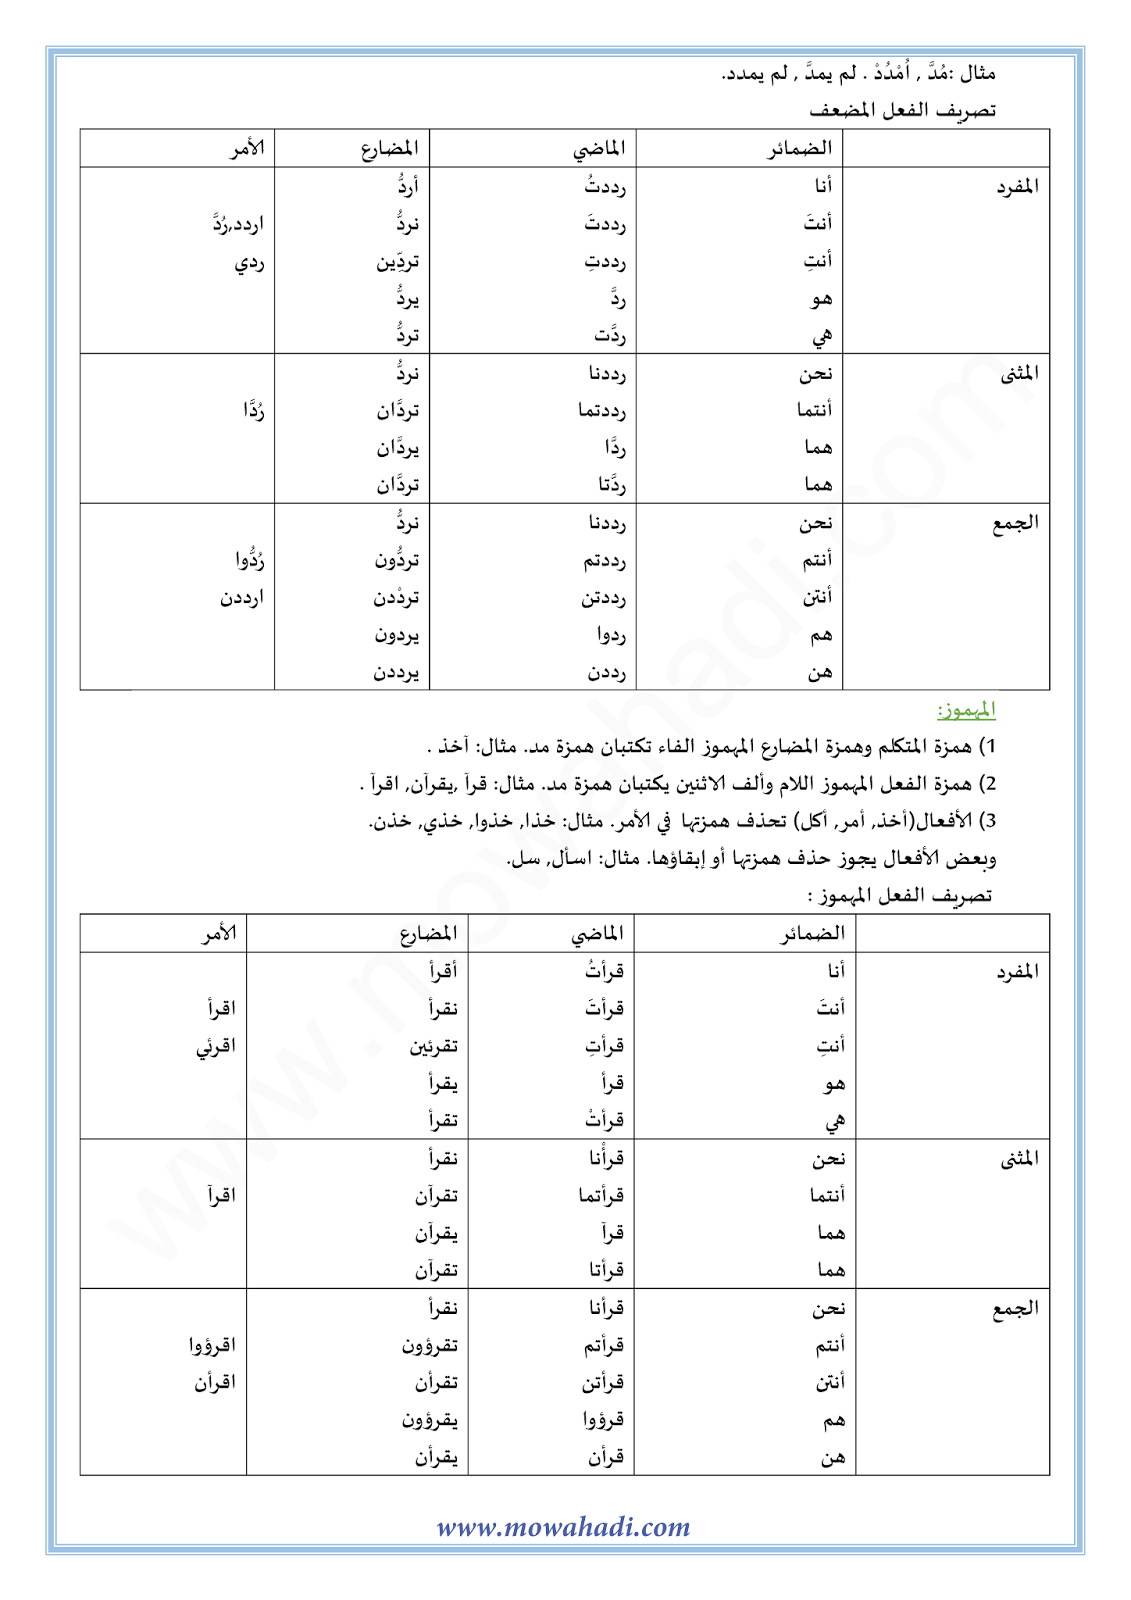 الدرس اللغوي تصريف الفعل الصحيح : السالم و المهموز و المضعف للسنة الأولى اعدادي في مادة اللغة العربية 3-cours-dars-loghawi1_003